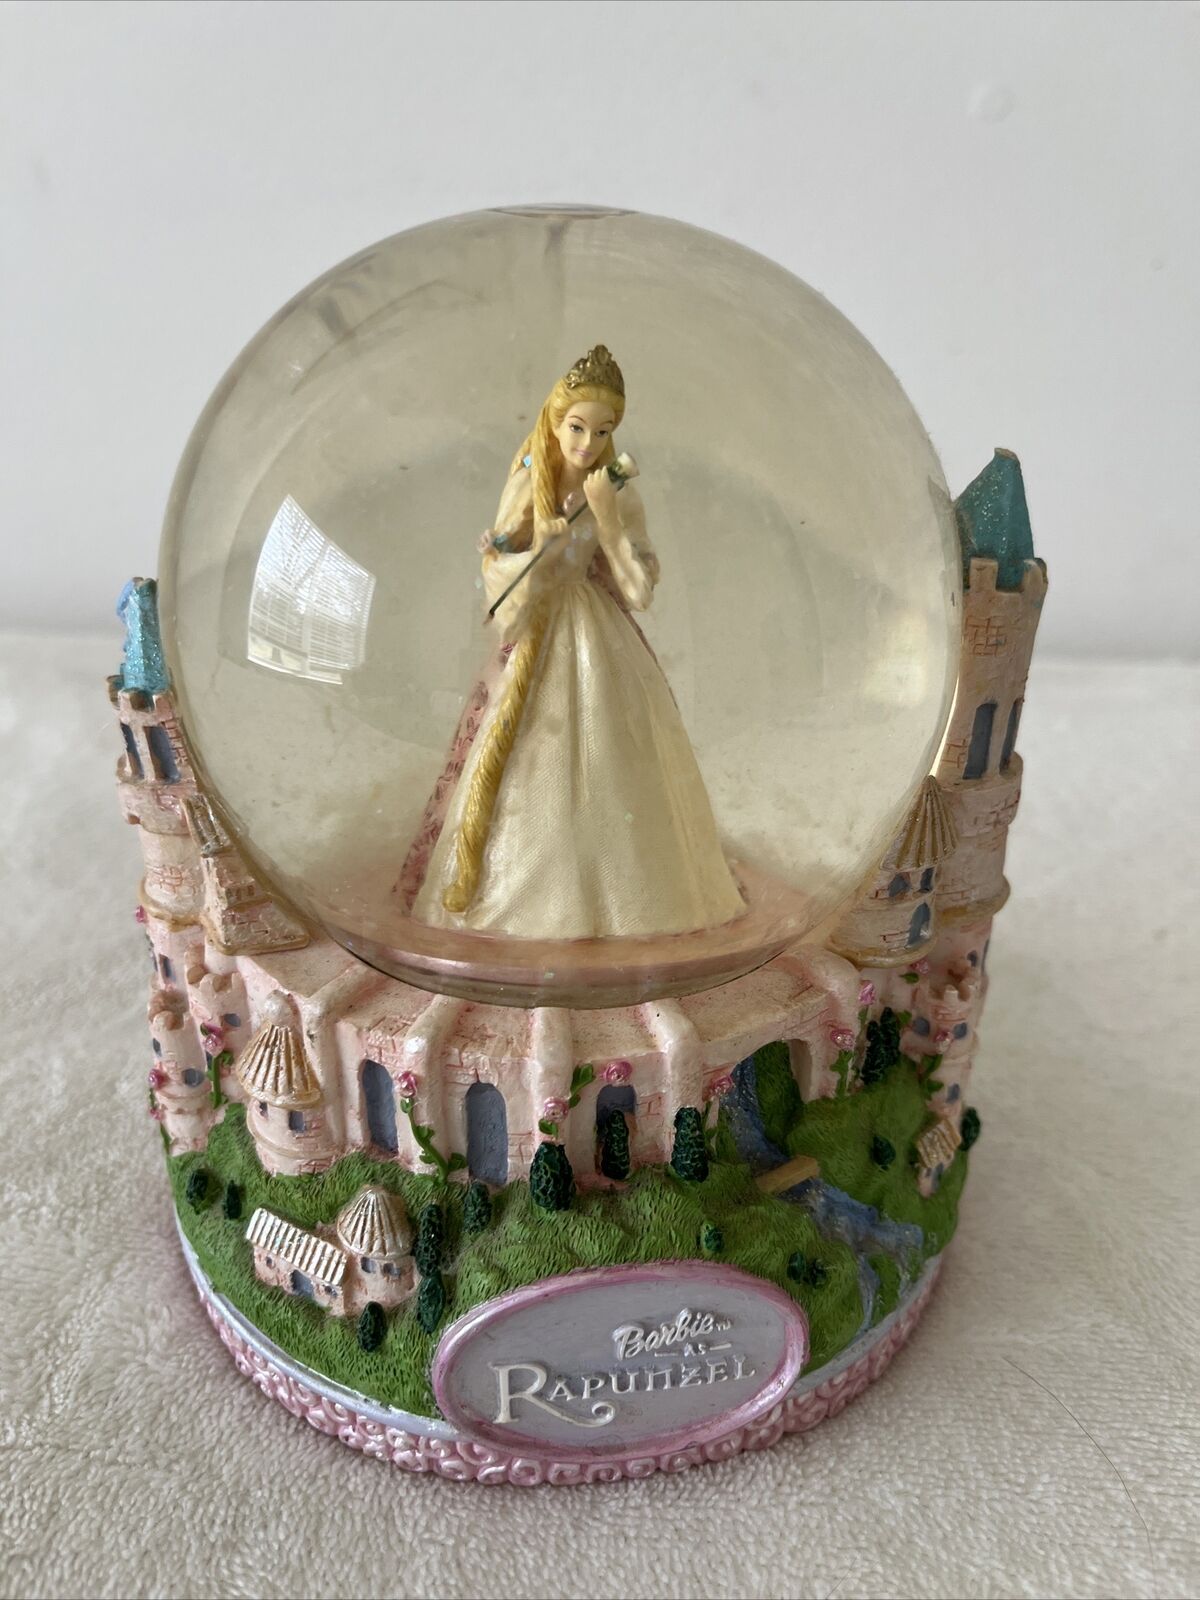 Barbie as Rapunzel Musical Glitter Water Globe Snowglobe 6